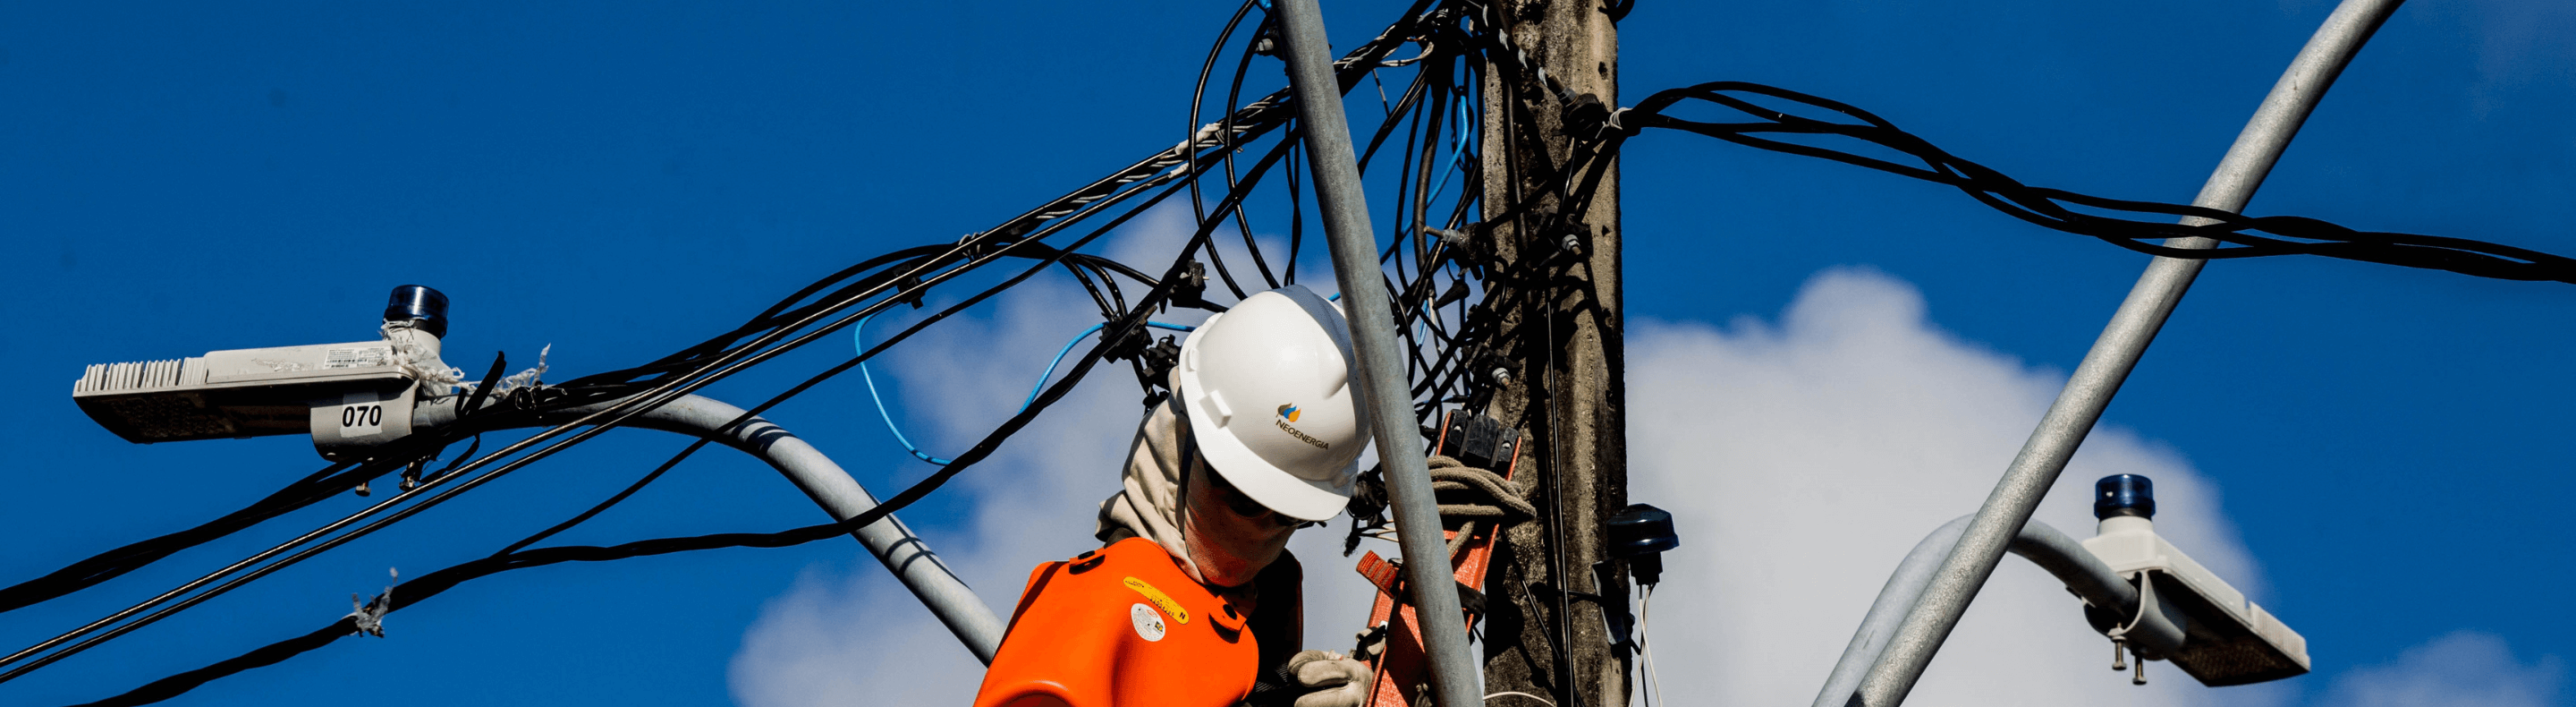 Eletricista atuando em rede elétrica